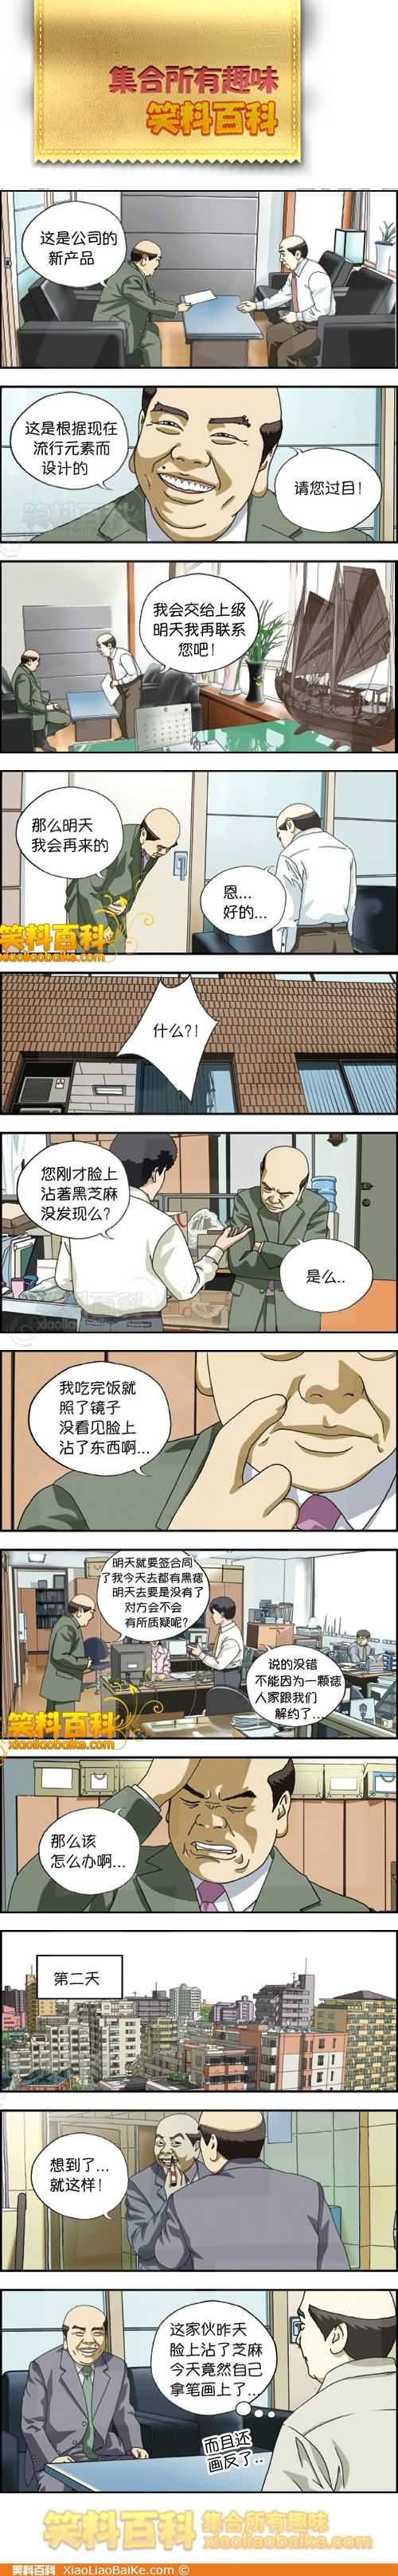 邪恶漫画爆笑囧图第289刊：担心的样子